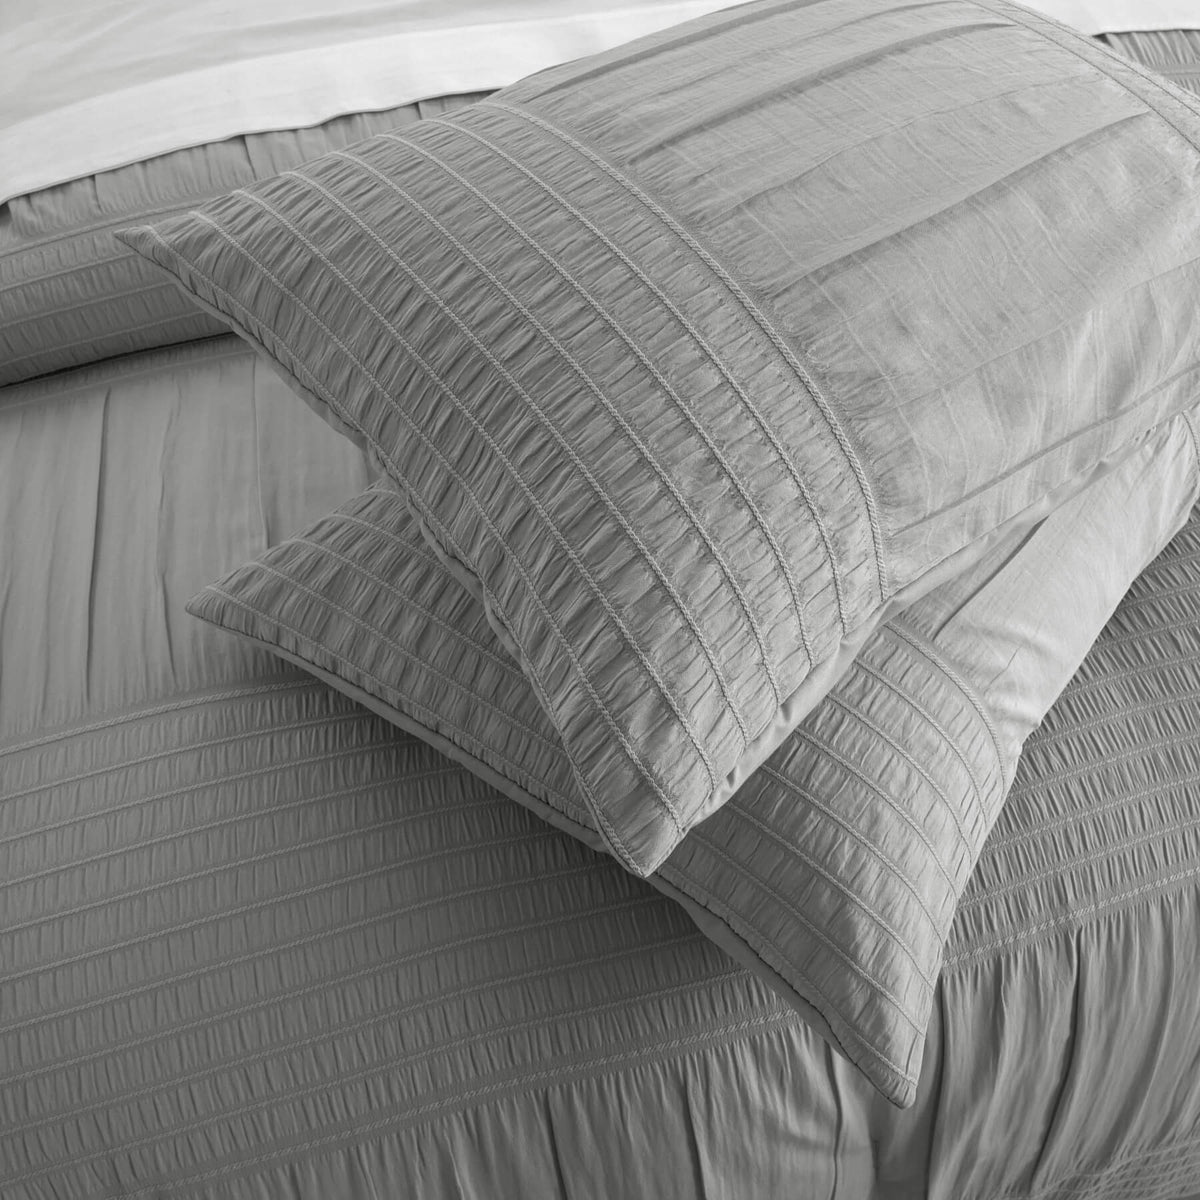 Chic Home Leona 9 Piece Pleated Seersucker Comforter Set-